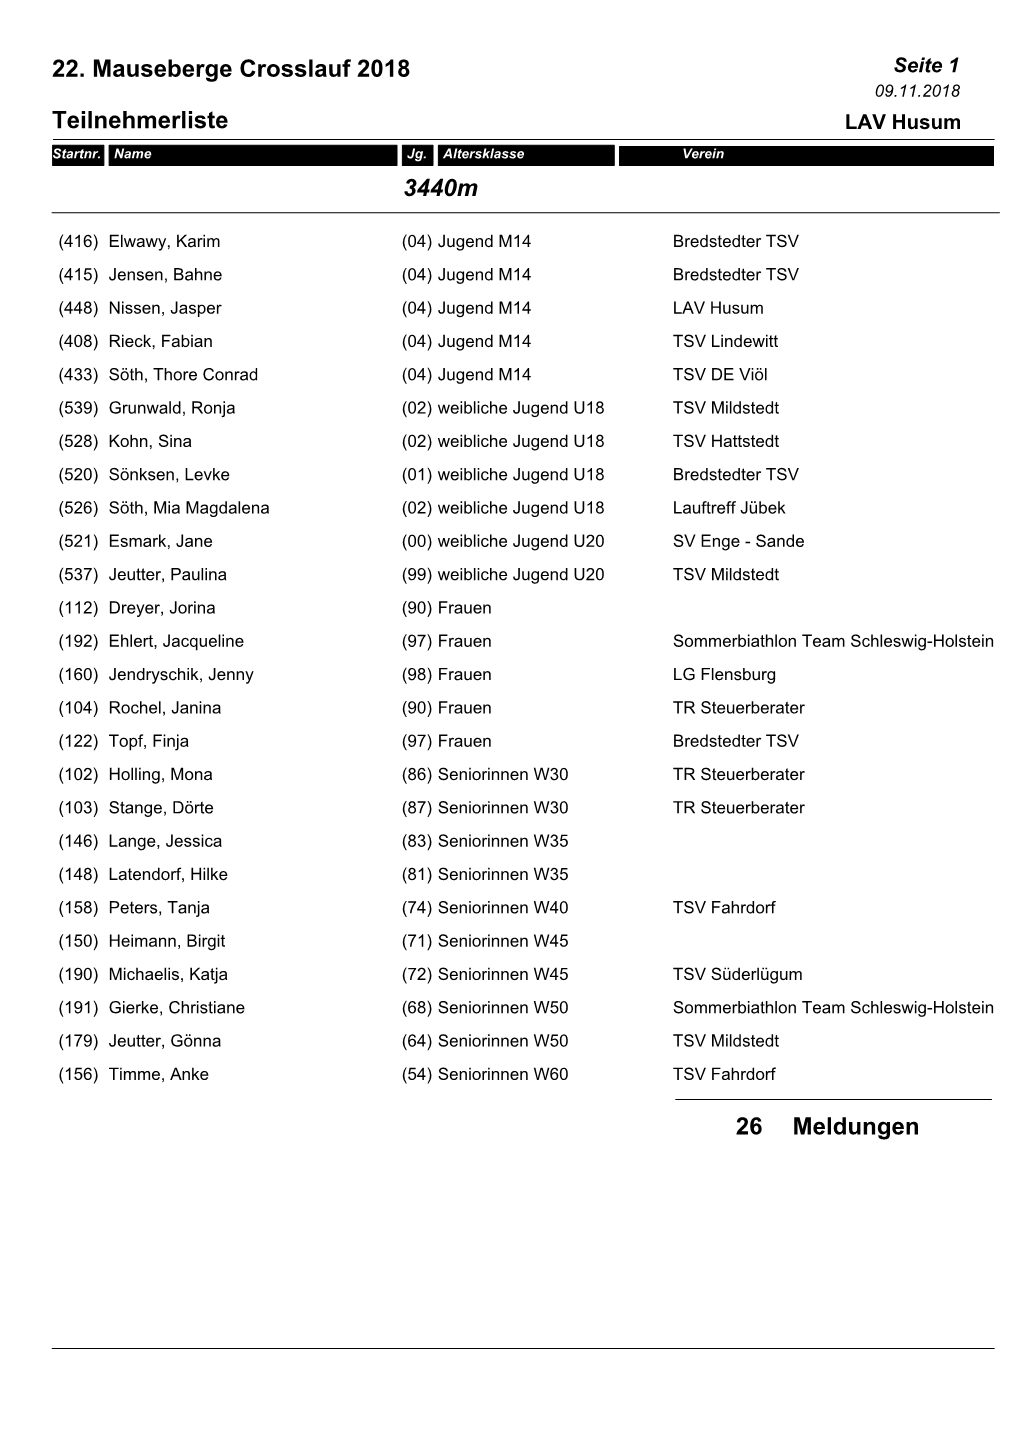 22. Mauseberge Crosslauf 2018 Teilnehmerliste 3440M Meldungen 26